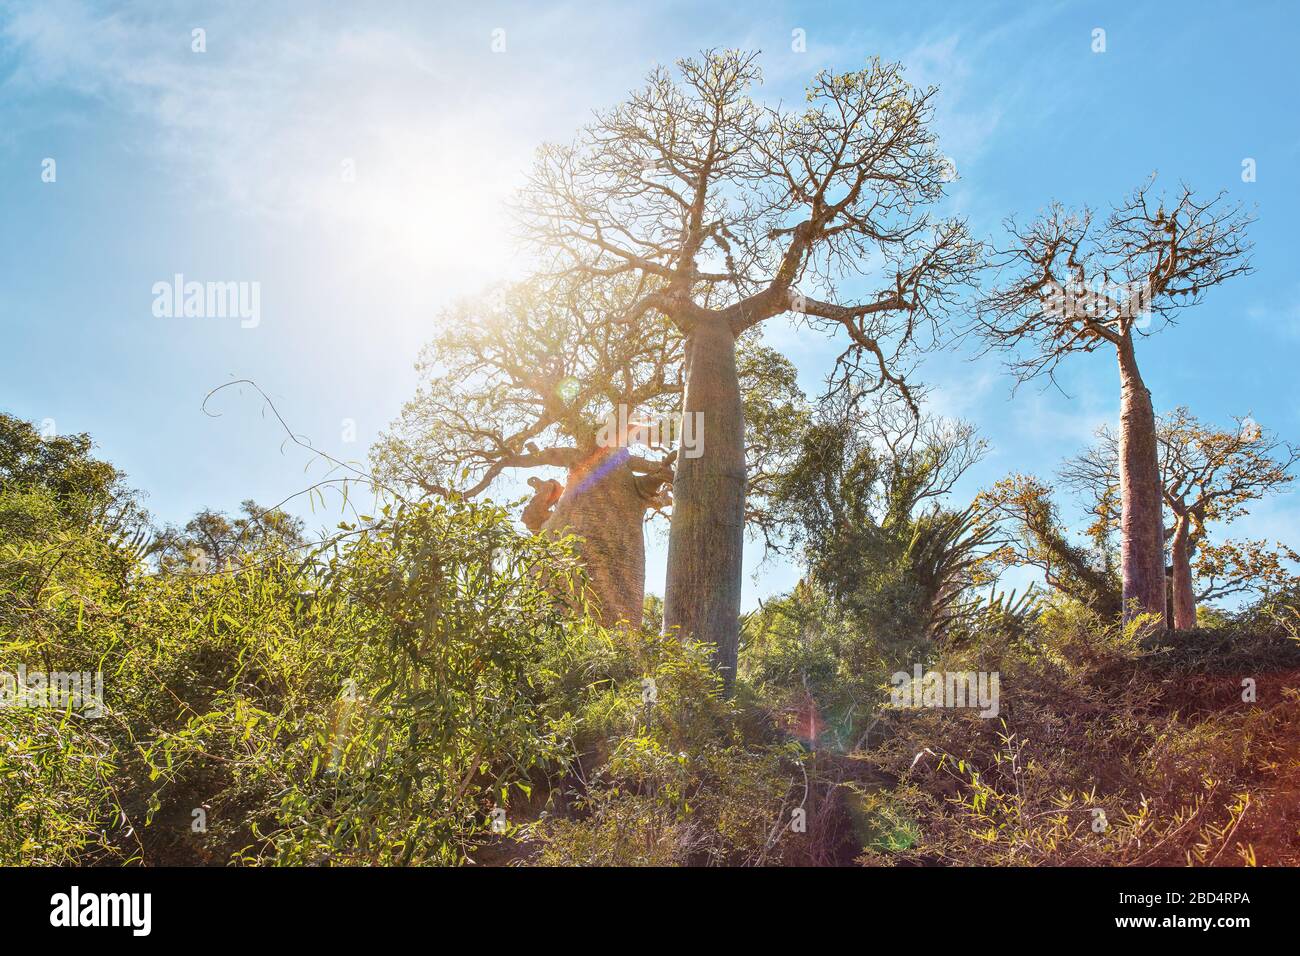 Forêt avec de petits baobab et des poulpes arbres, buissons et herbe poussant sur un sol rouge poussiéreux, fort contre-jour avec des fusées d'objectif Banque D'Images